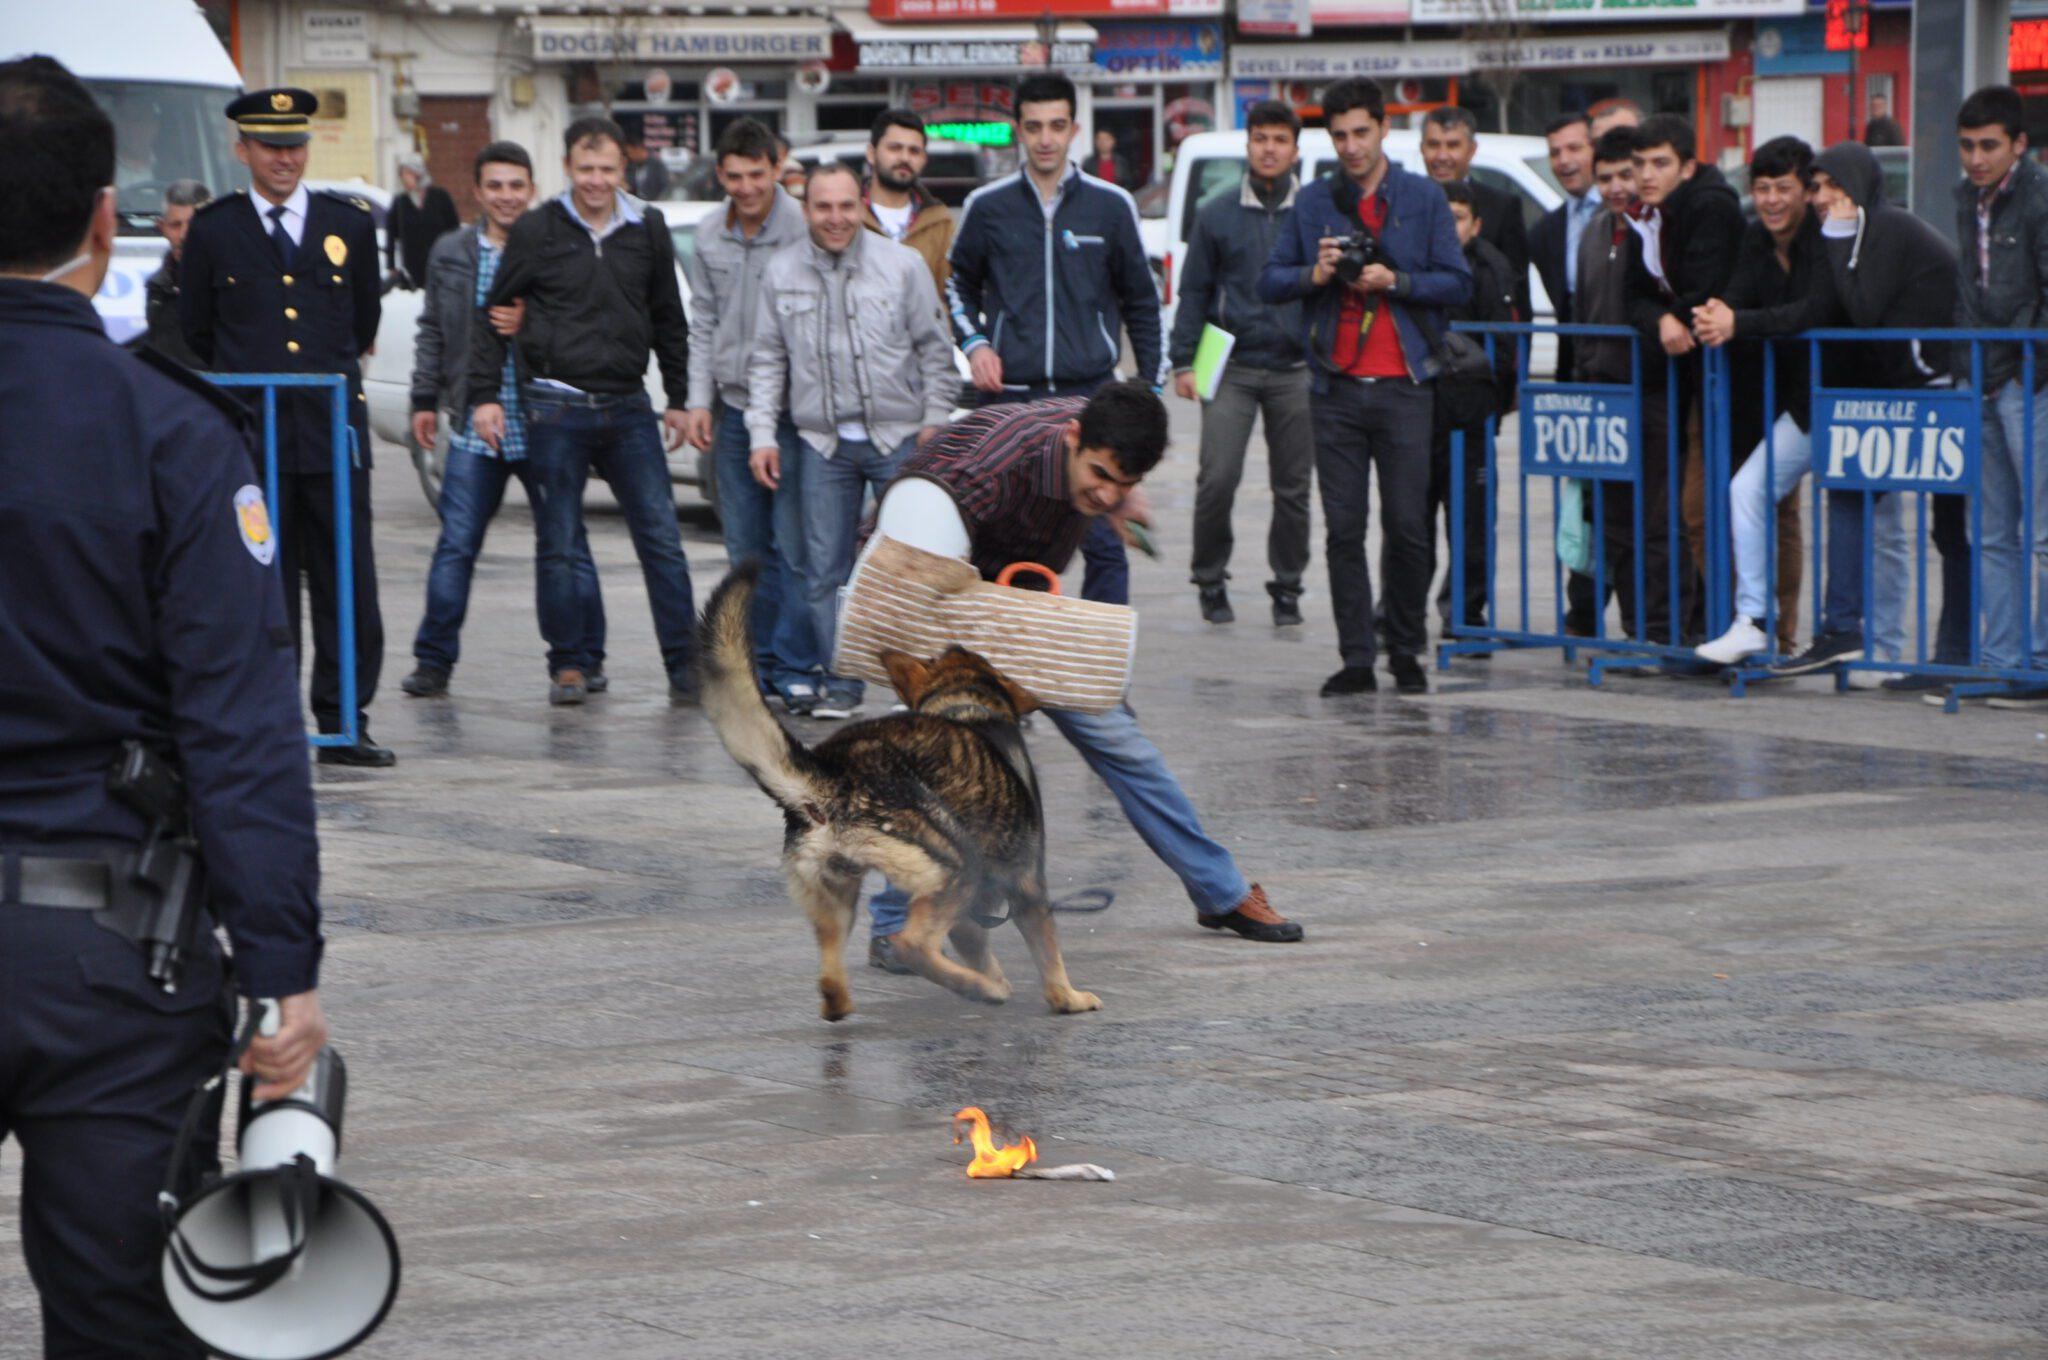 Polis köpekleri şov yaptı - Kırıkkale Haber, Son Dakika Kırıkkale Haberleri